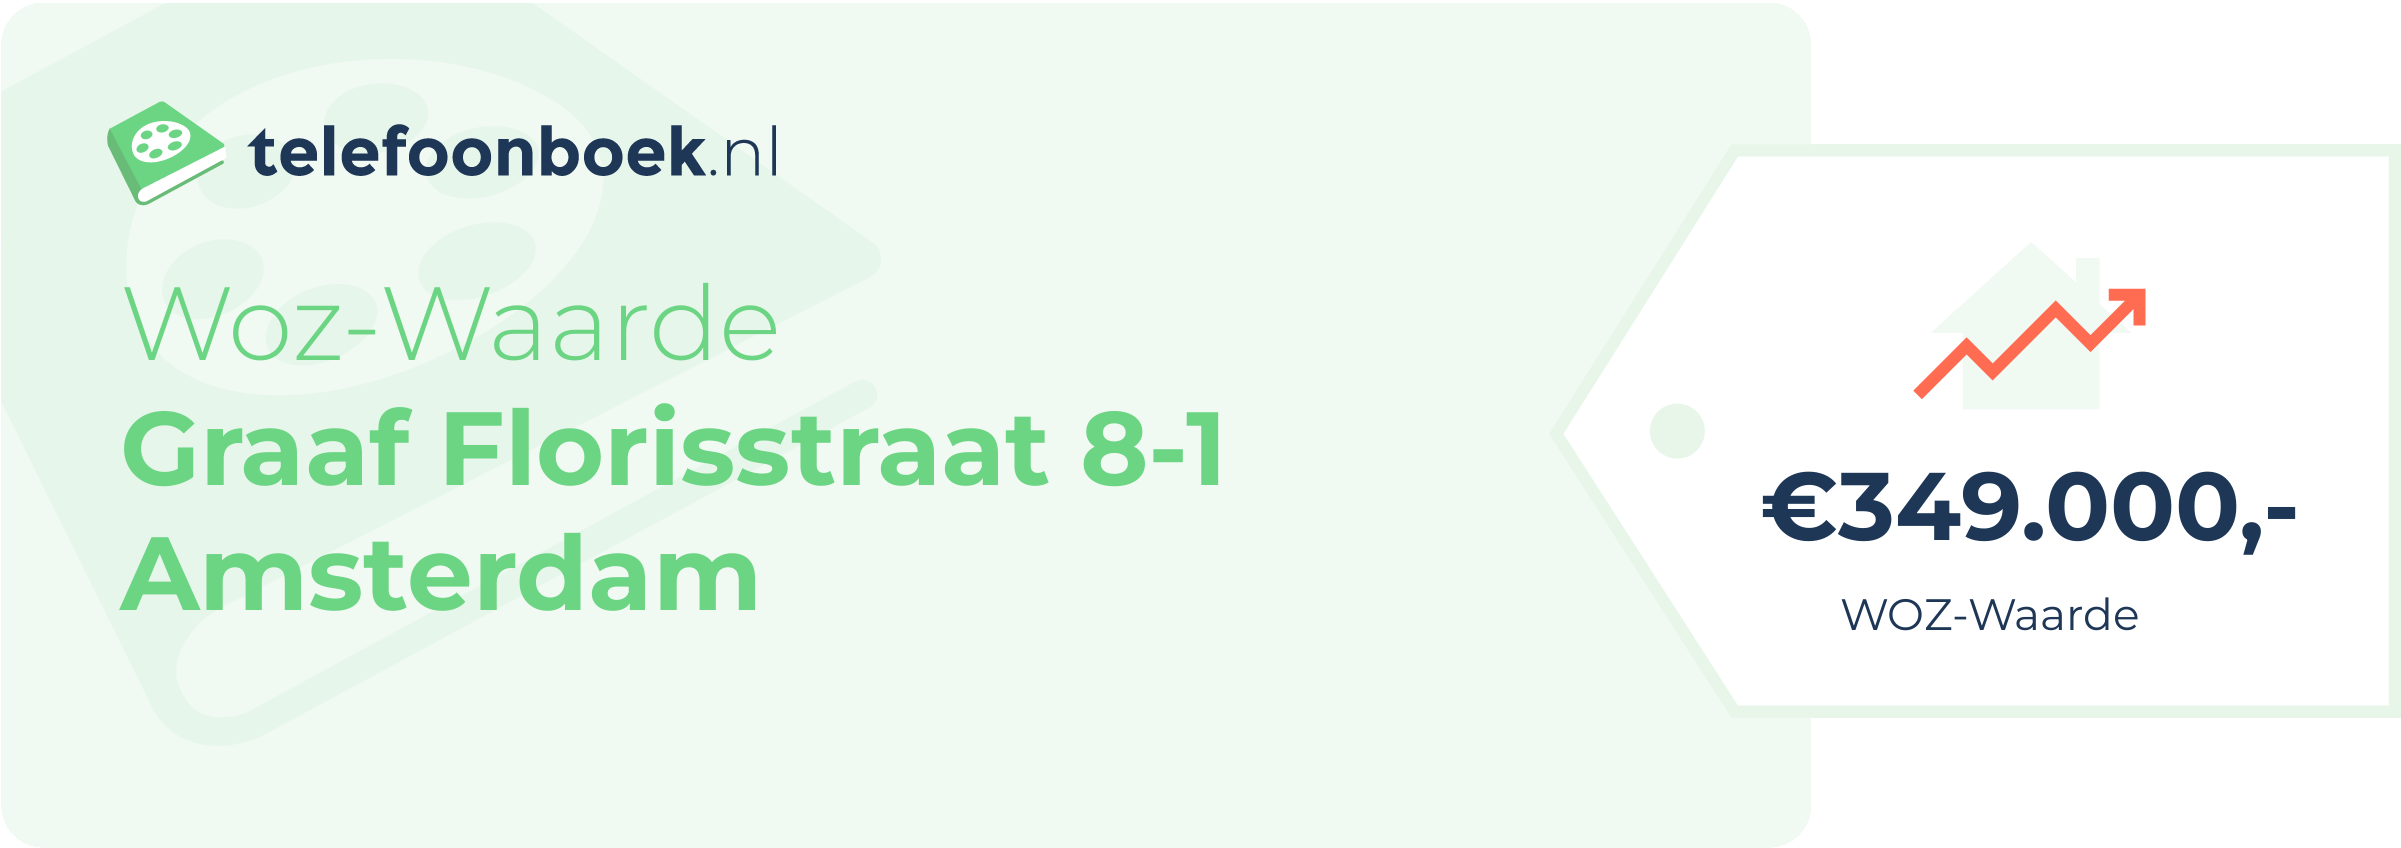 WOZ-waarde Graaf Florisstraat 8-1 Amsterdam